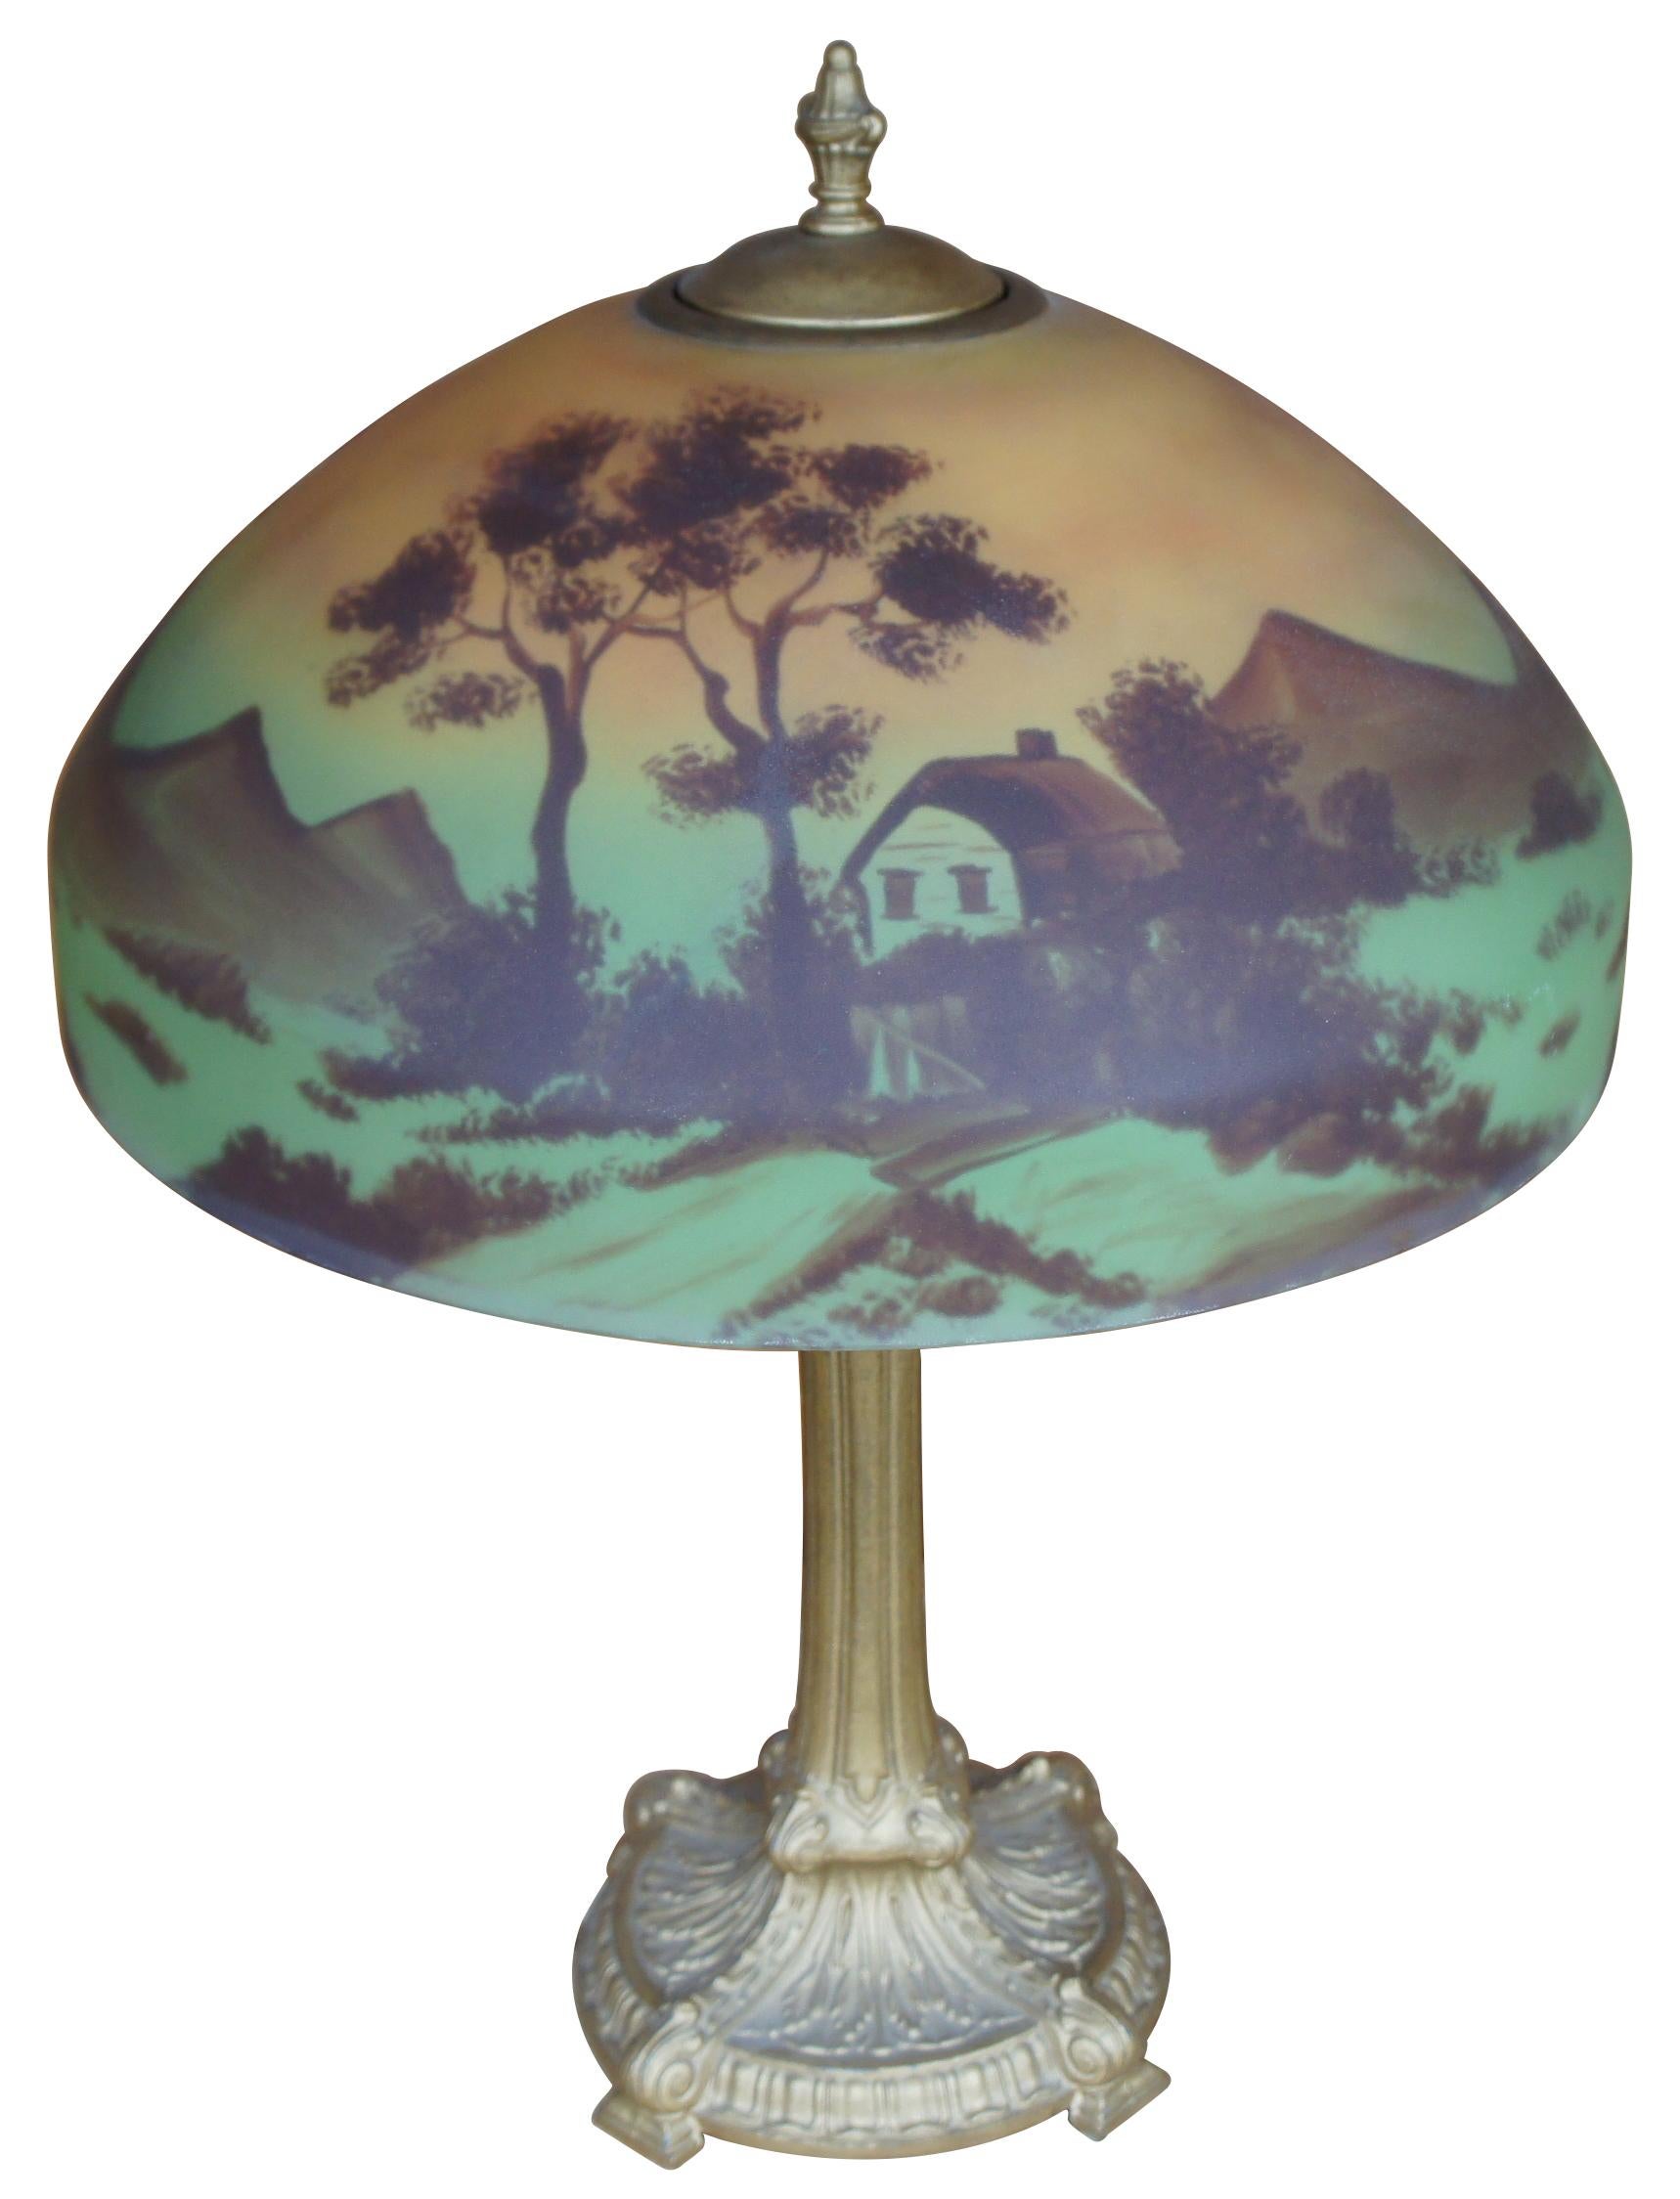 Ancienne lampe de salon victorienne Pittsburgh en fonte peinte à l'envers représentant un paysage de ferme avec des arbres et des montagnes.
 